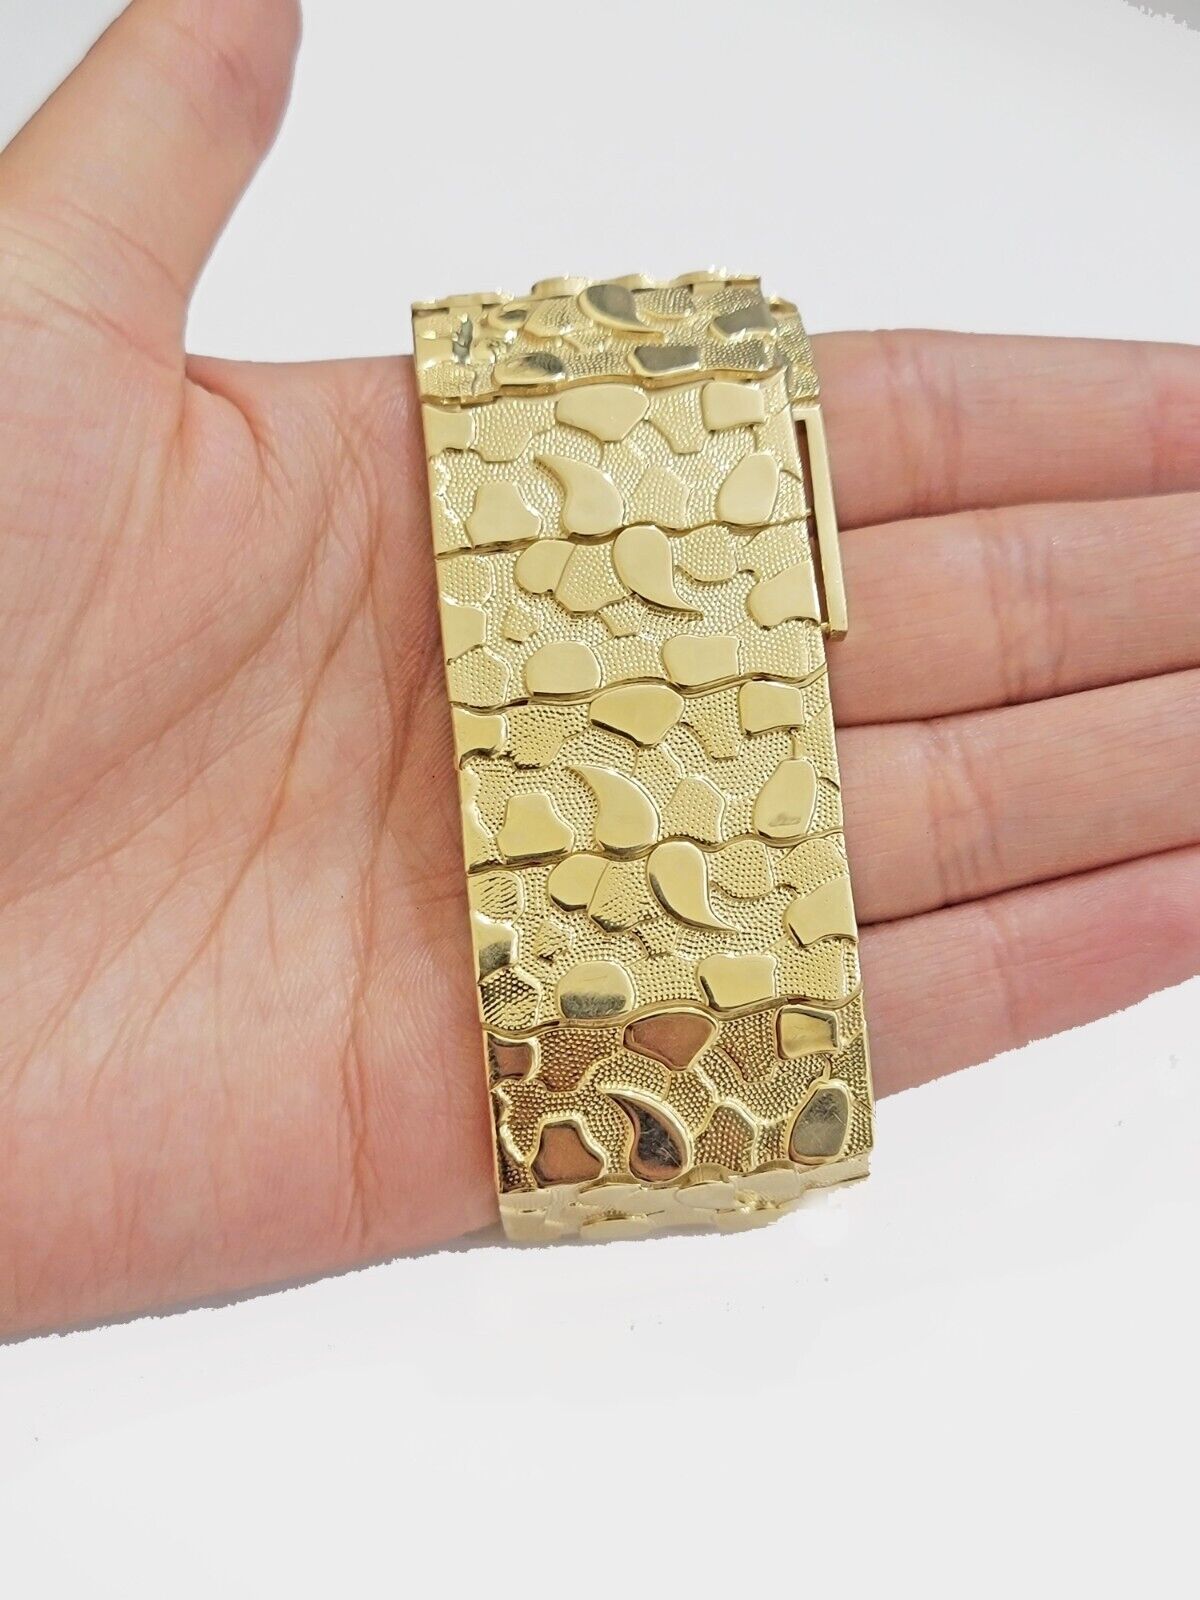 VTG 10k Yellow Gold Nugget Bracelet, Gold Brutalist A… - Gem